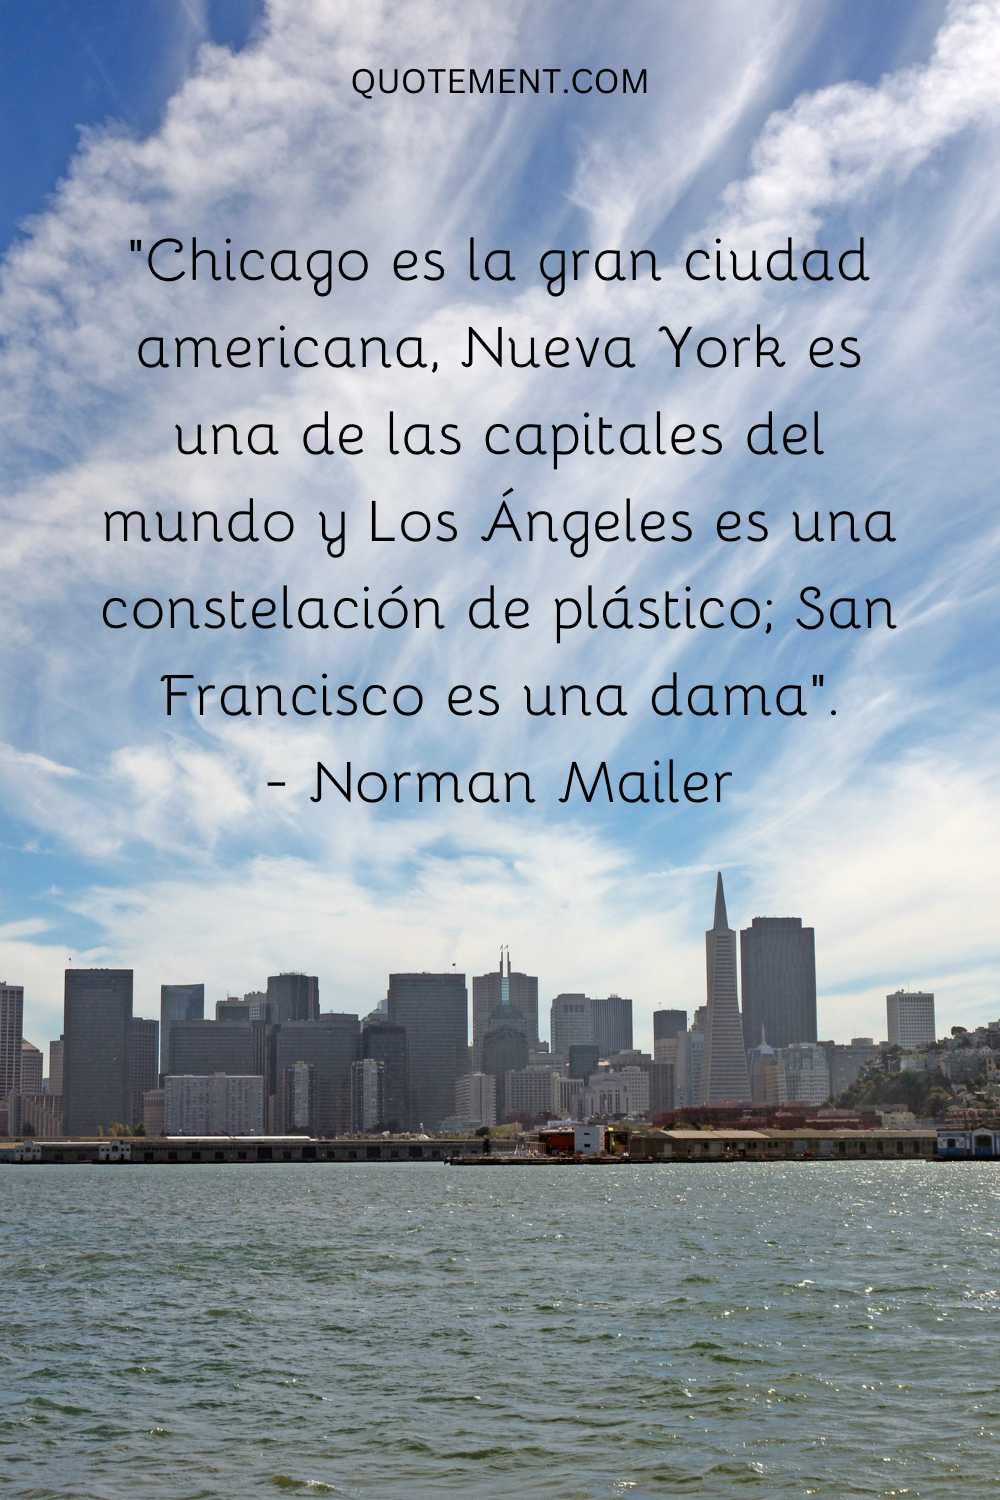 Chicago es la gran ciudad americana, Nueva York es una de las capitales del mundo, y Los Ángeles es una constelación de plástico